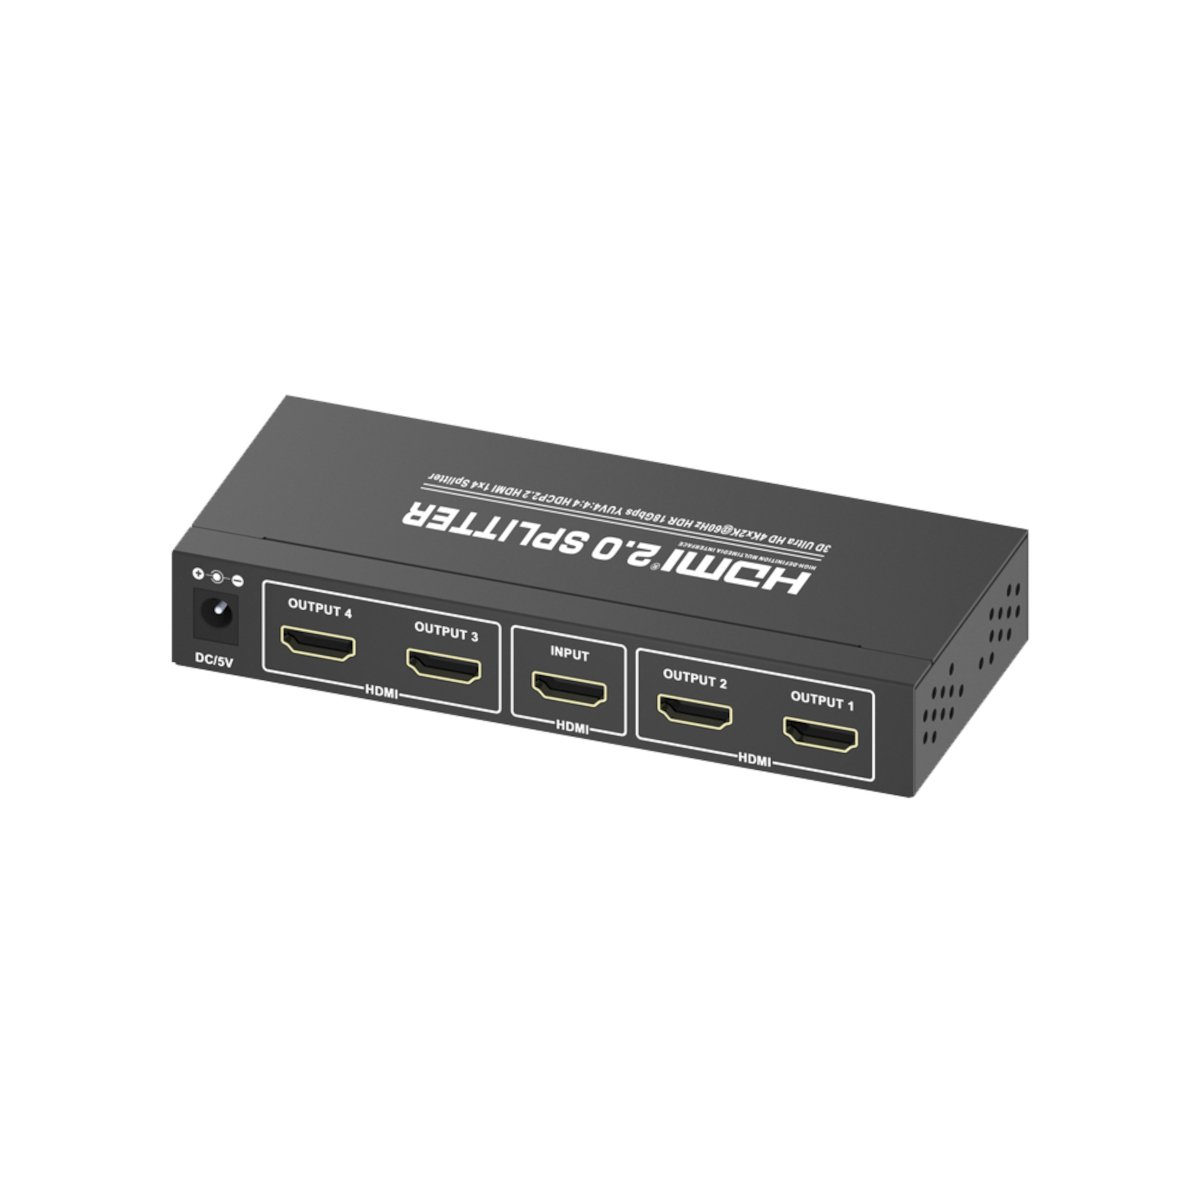 MAXTRACK Splitter Verteiler HDMI® CS25-4L 4K HDMI®